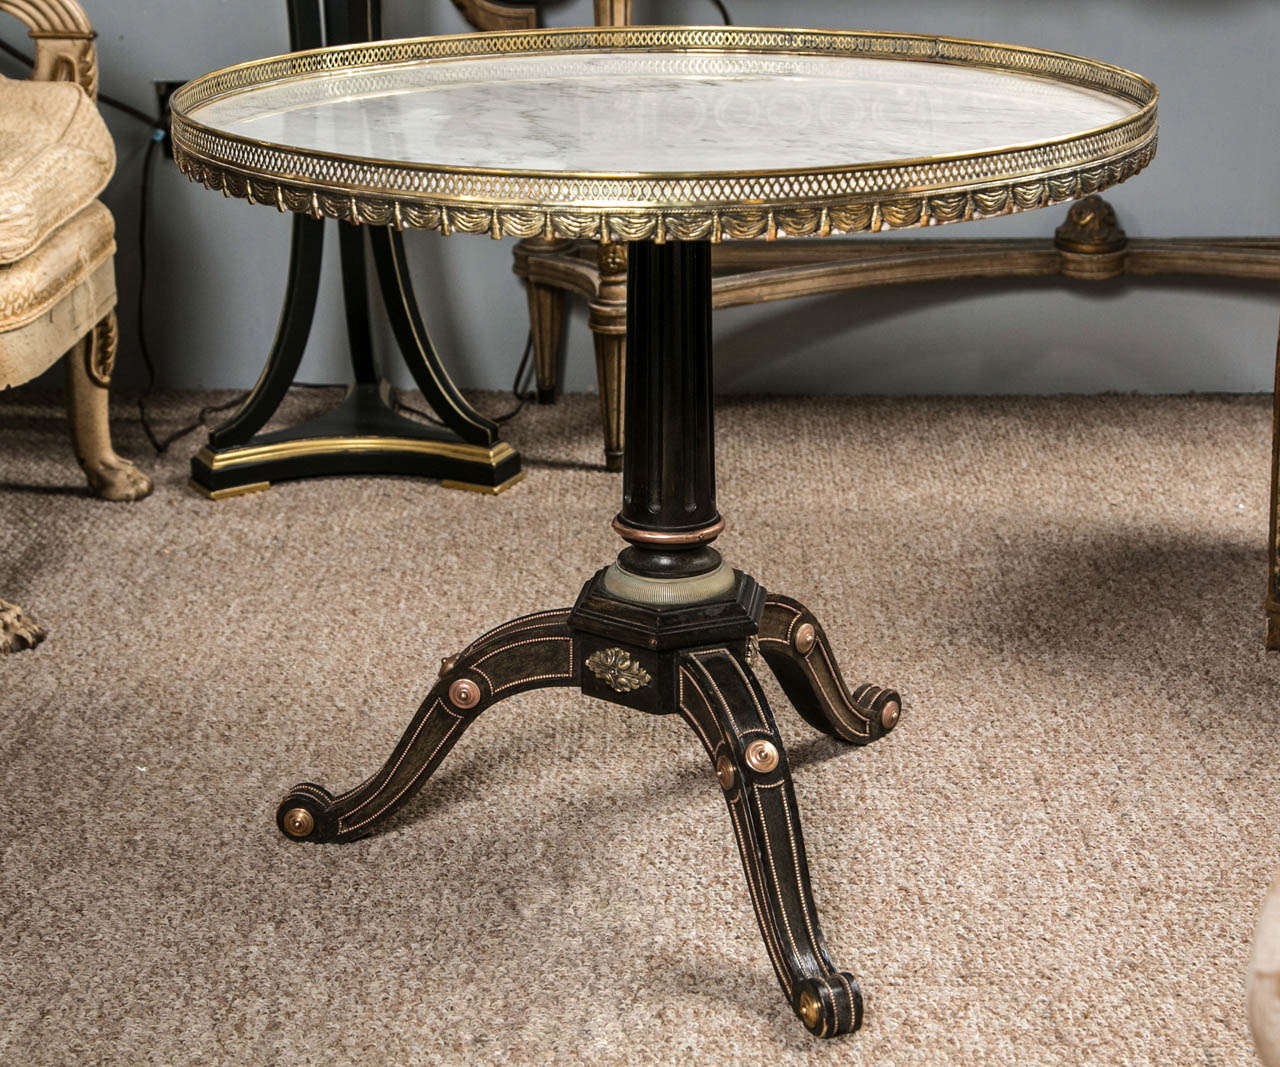 Une très belle et rare table centrale russe de style néoclassique par Jansen. Cette table aux bois ébénisés est finement moulée dans des montures en bronze reposant sur une base à trois pieds avec des montures en bronze sur toute la surface menant à